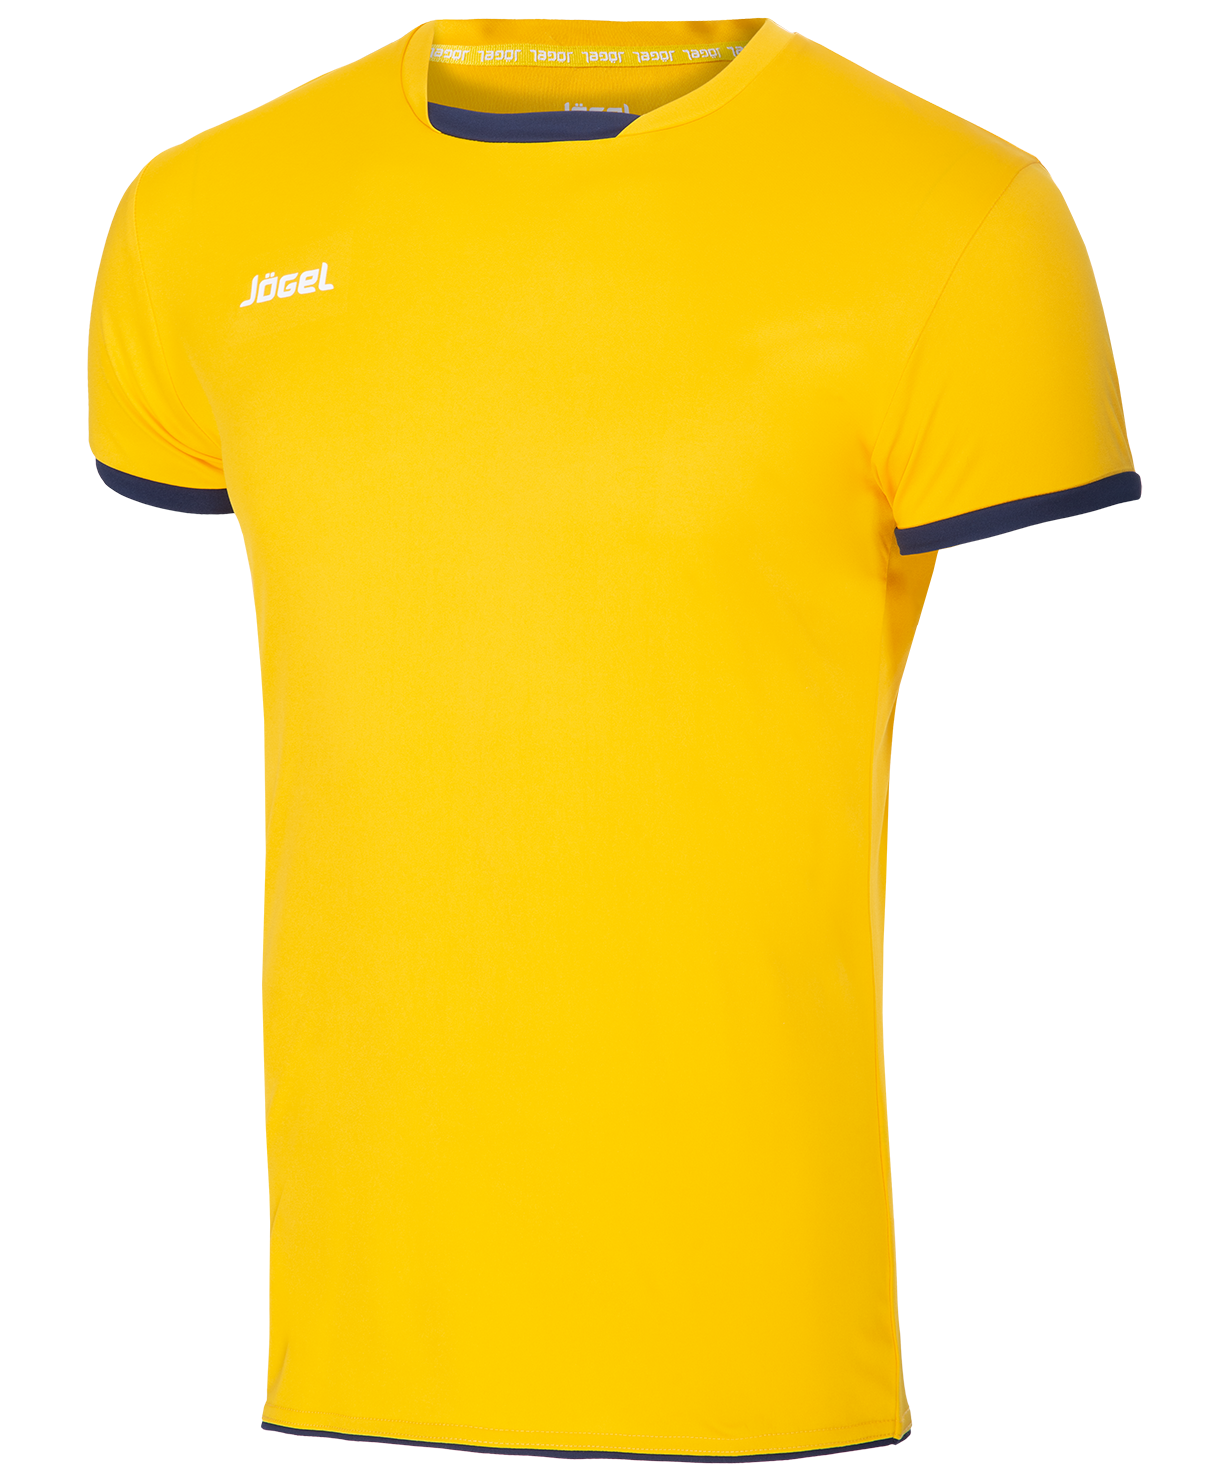 Jogel новая форма. Jogel футболка волейбольная. Майка волейбольная MS желтая. Футболка желтая. Желтая спортивная футболка.